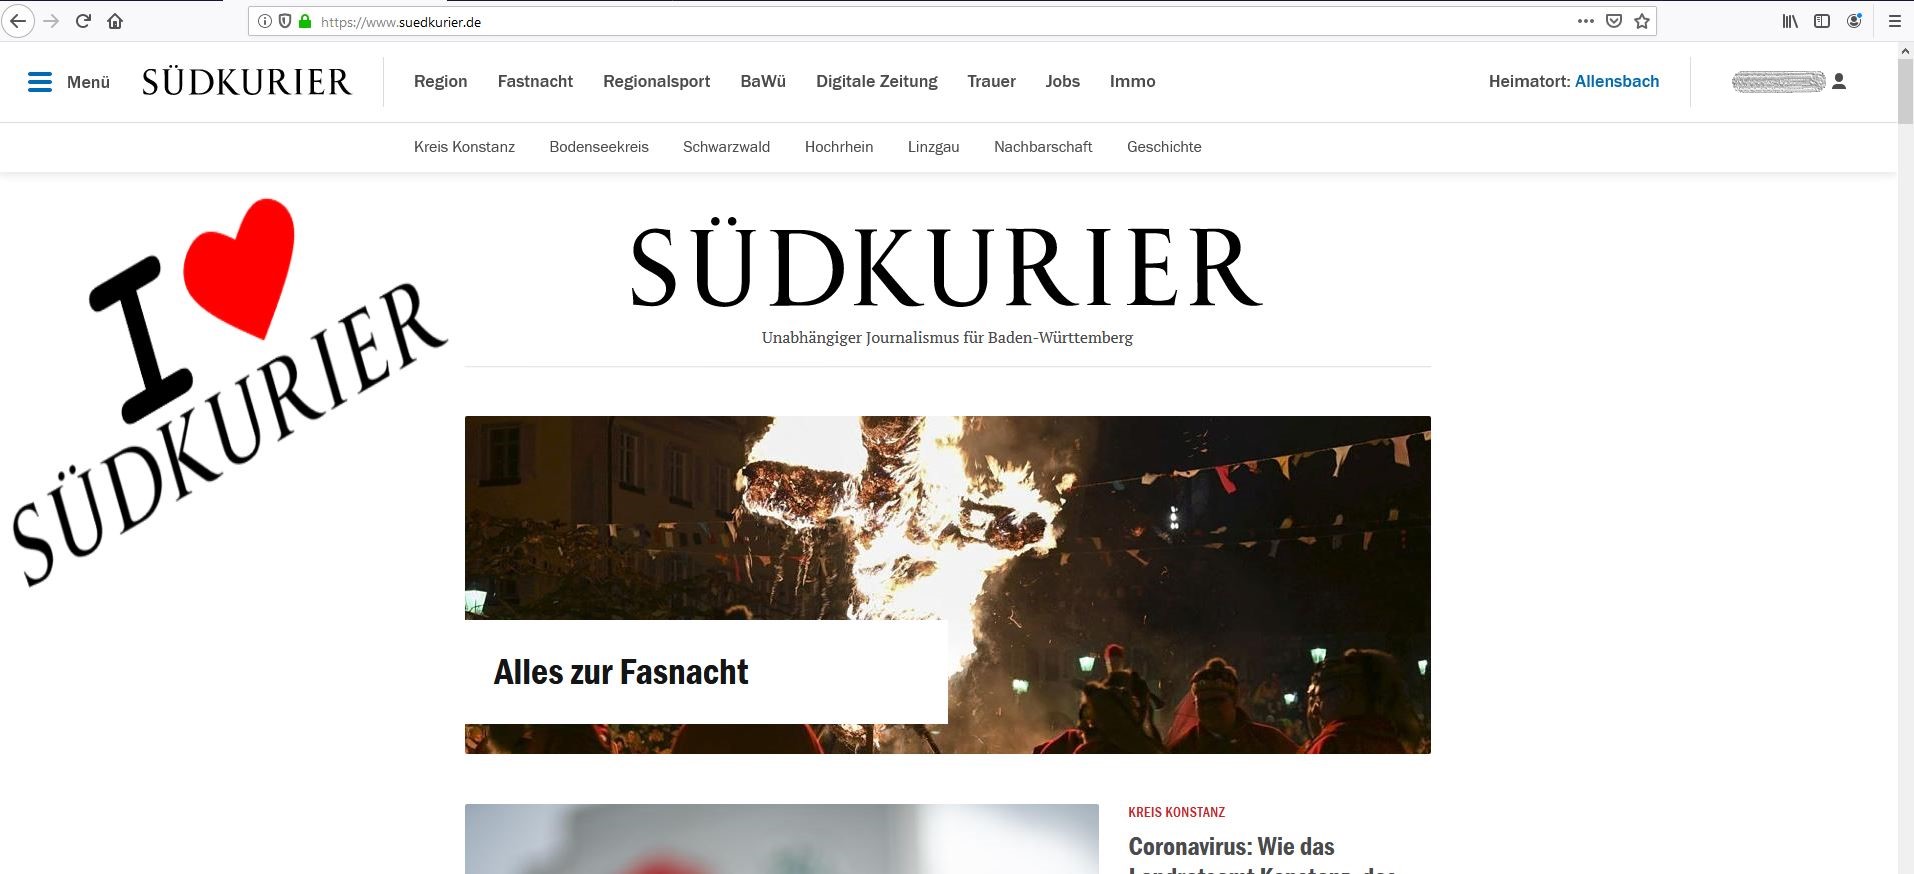 Ergebnis des Add-ons: I love SÜDKURIER auf suedkurier.de